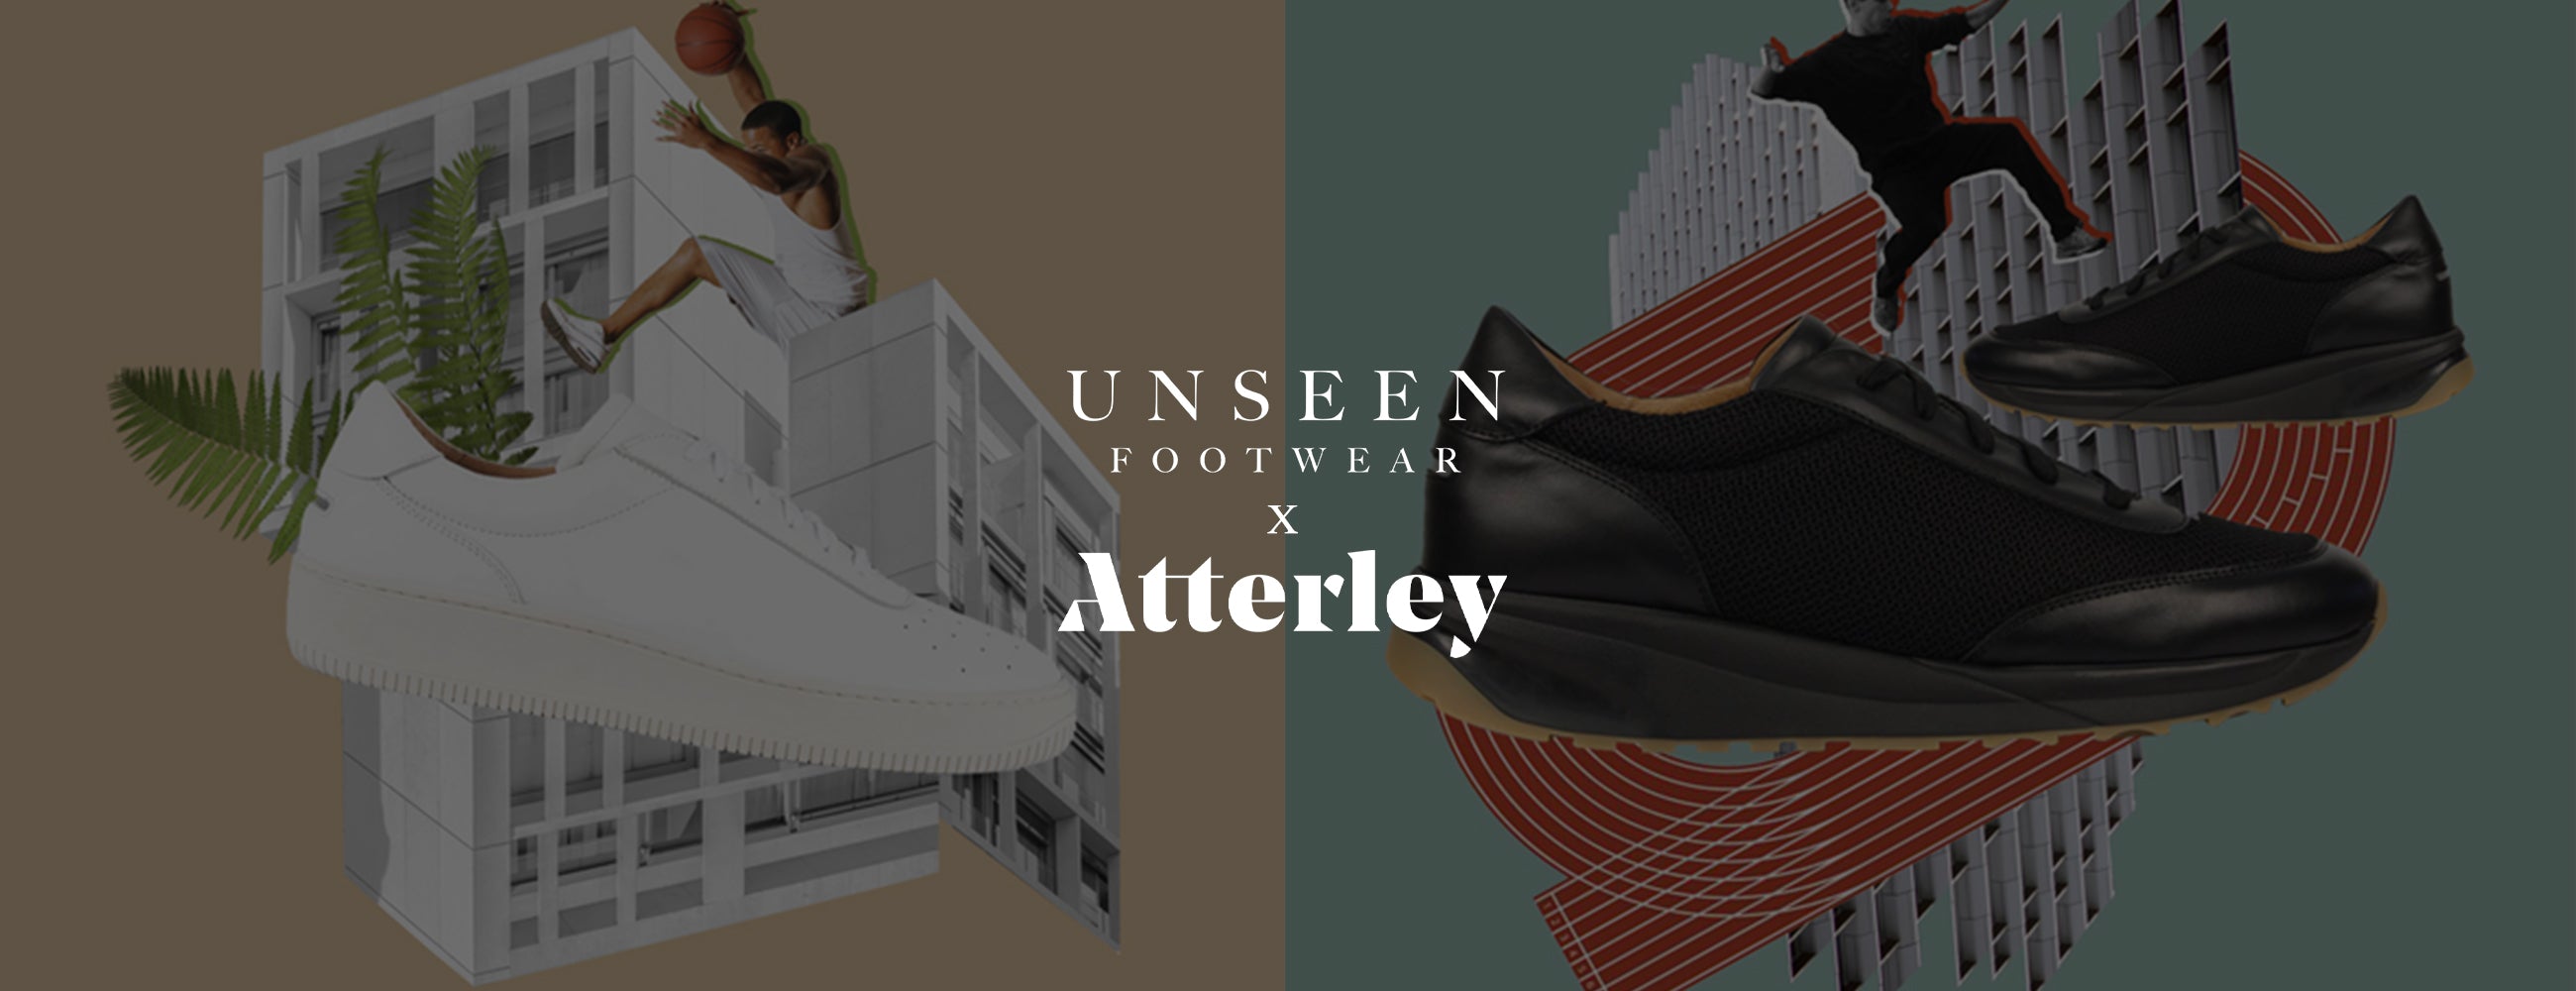 Unseen Footwear x Atterley